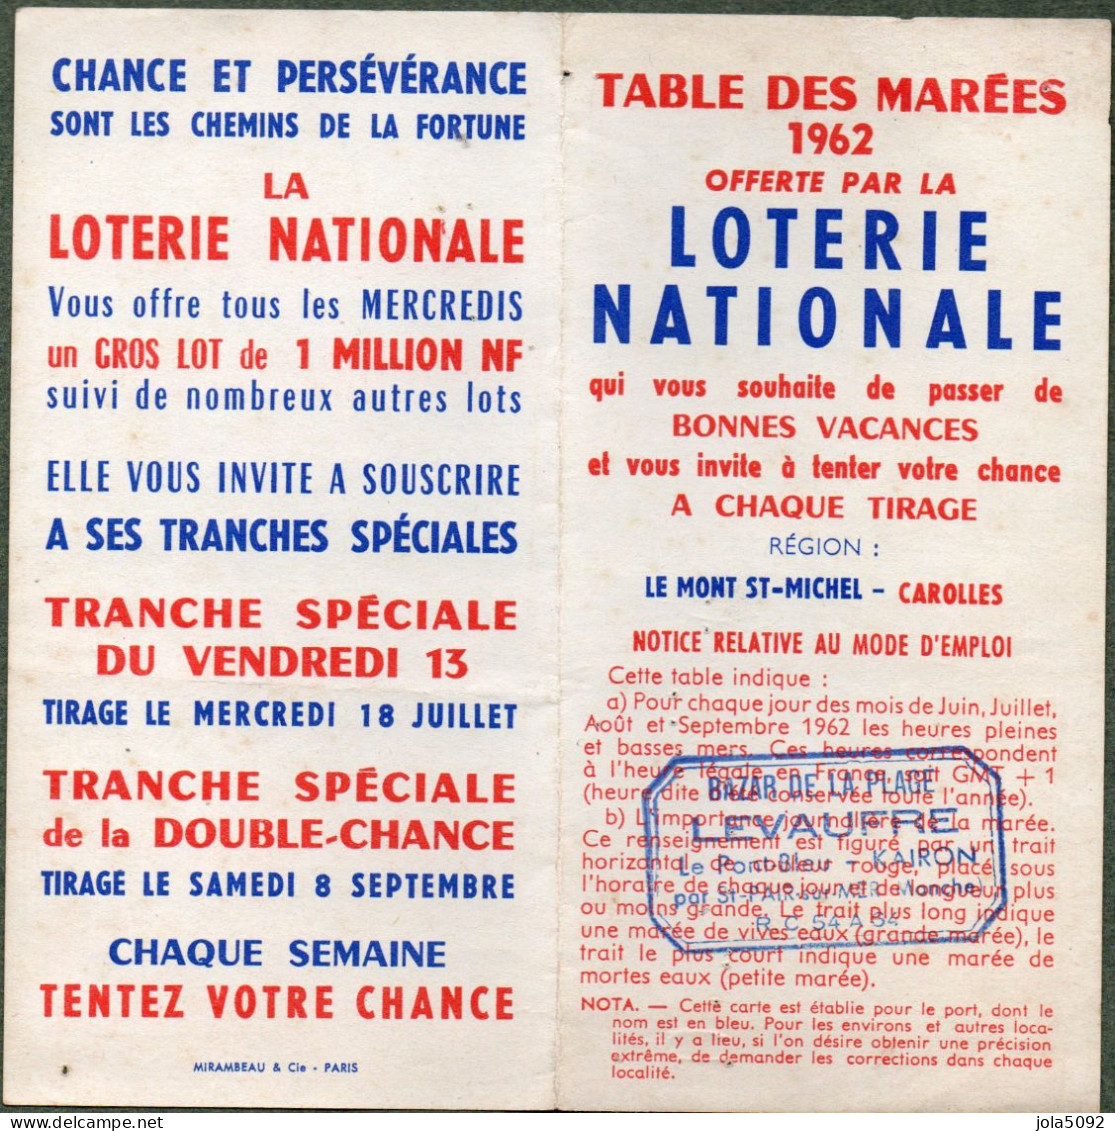 Horaire Des Marées 1962 Le Mont St-Michel Carolles - Offert Par La LOTTERIE NATIONALE - Europe